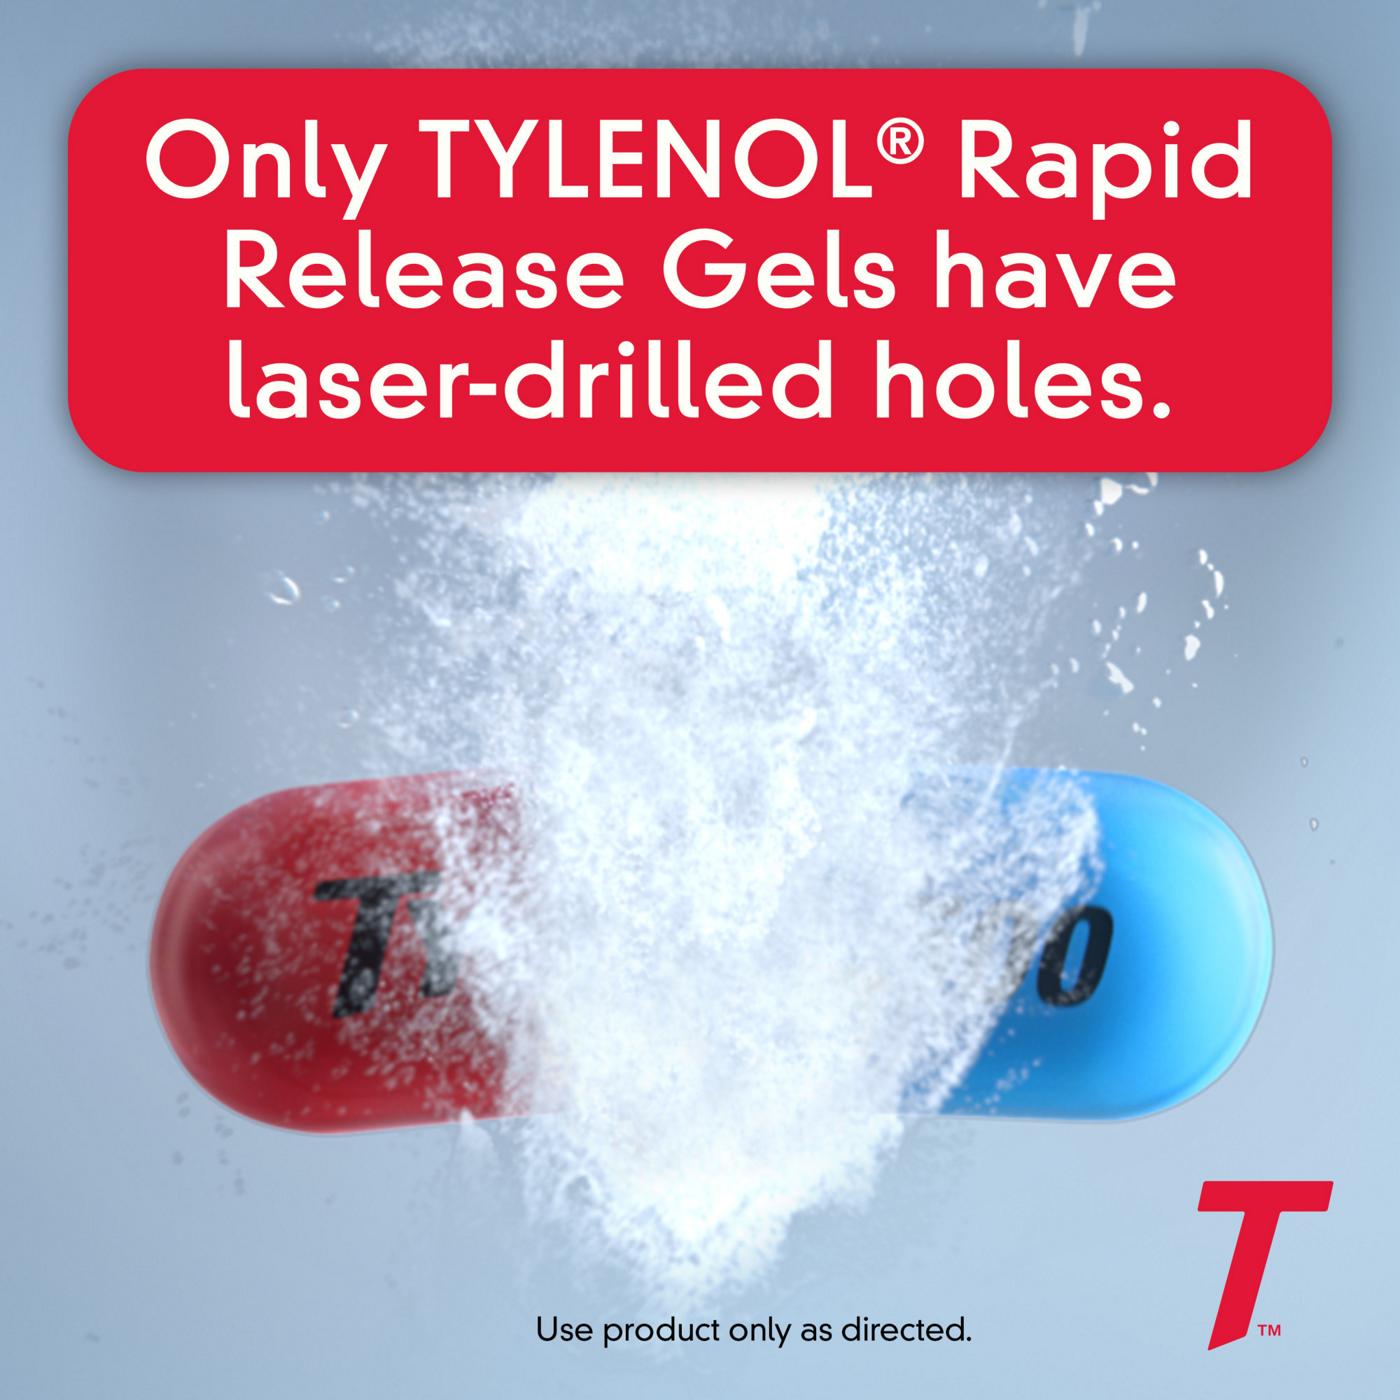 Tylenol Rapid Release Gels; image 5 of 6